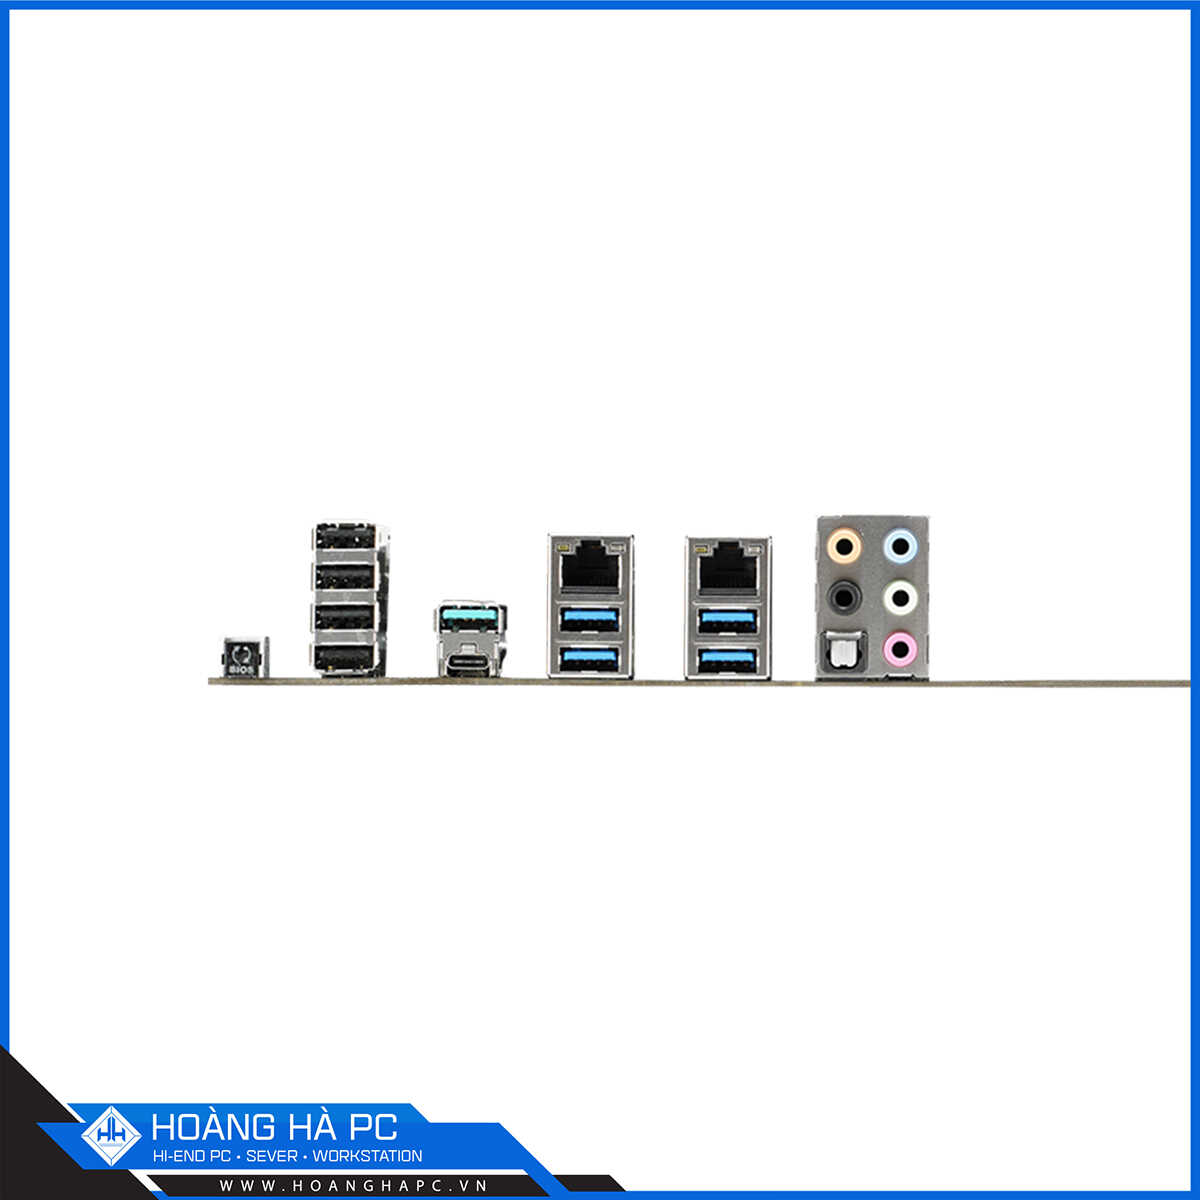 Mainboard Asus WS X299 PRO - Workstation (Intel X299, LGA 2066, ATX, 8 Khe Cắm Ram DDR4)